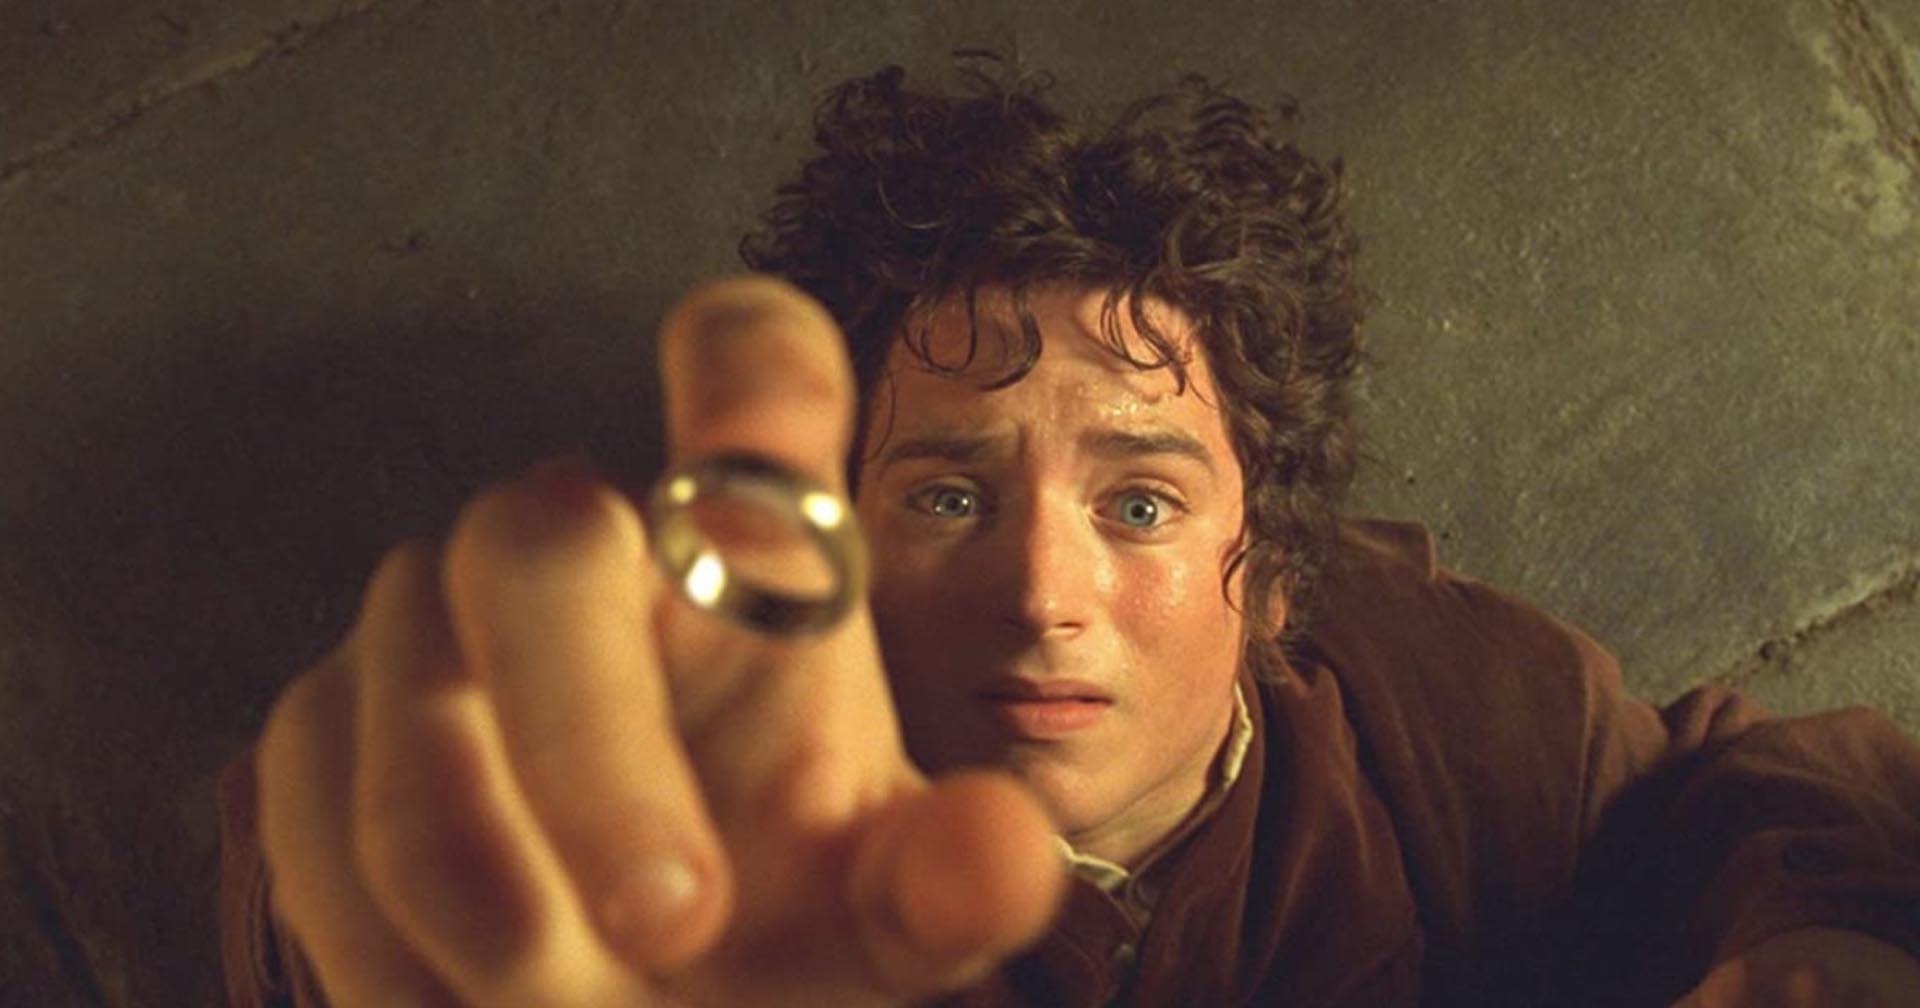 เอไลจาห์ วูด ยอมรับว่าเจ้าตัวอ่านนิยาย The Lord of The Rings ไม่จบ แม้จะผ่านมา 20 ปีแล้วก็ตาม